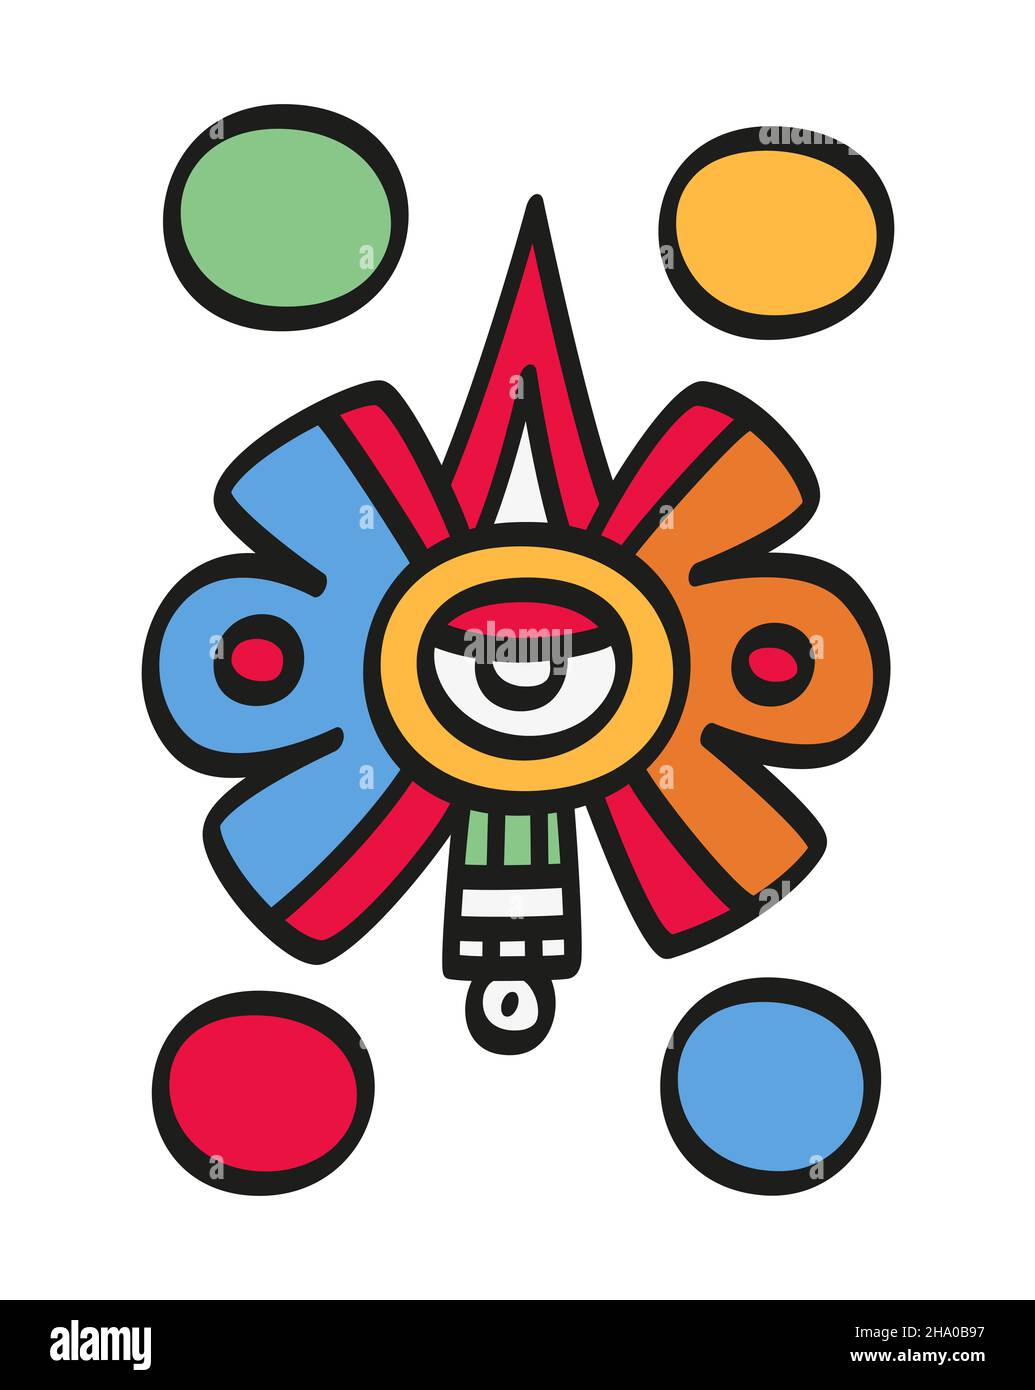 Nahui Ollin, quinto simbolo del sole nella cosmologia azteca, con un occhio al centro, un raggio solare e una pietra preziosa che emana dall'occhio. Foto Stock